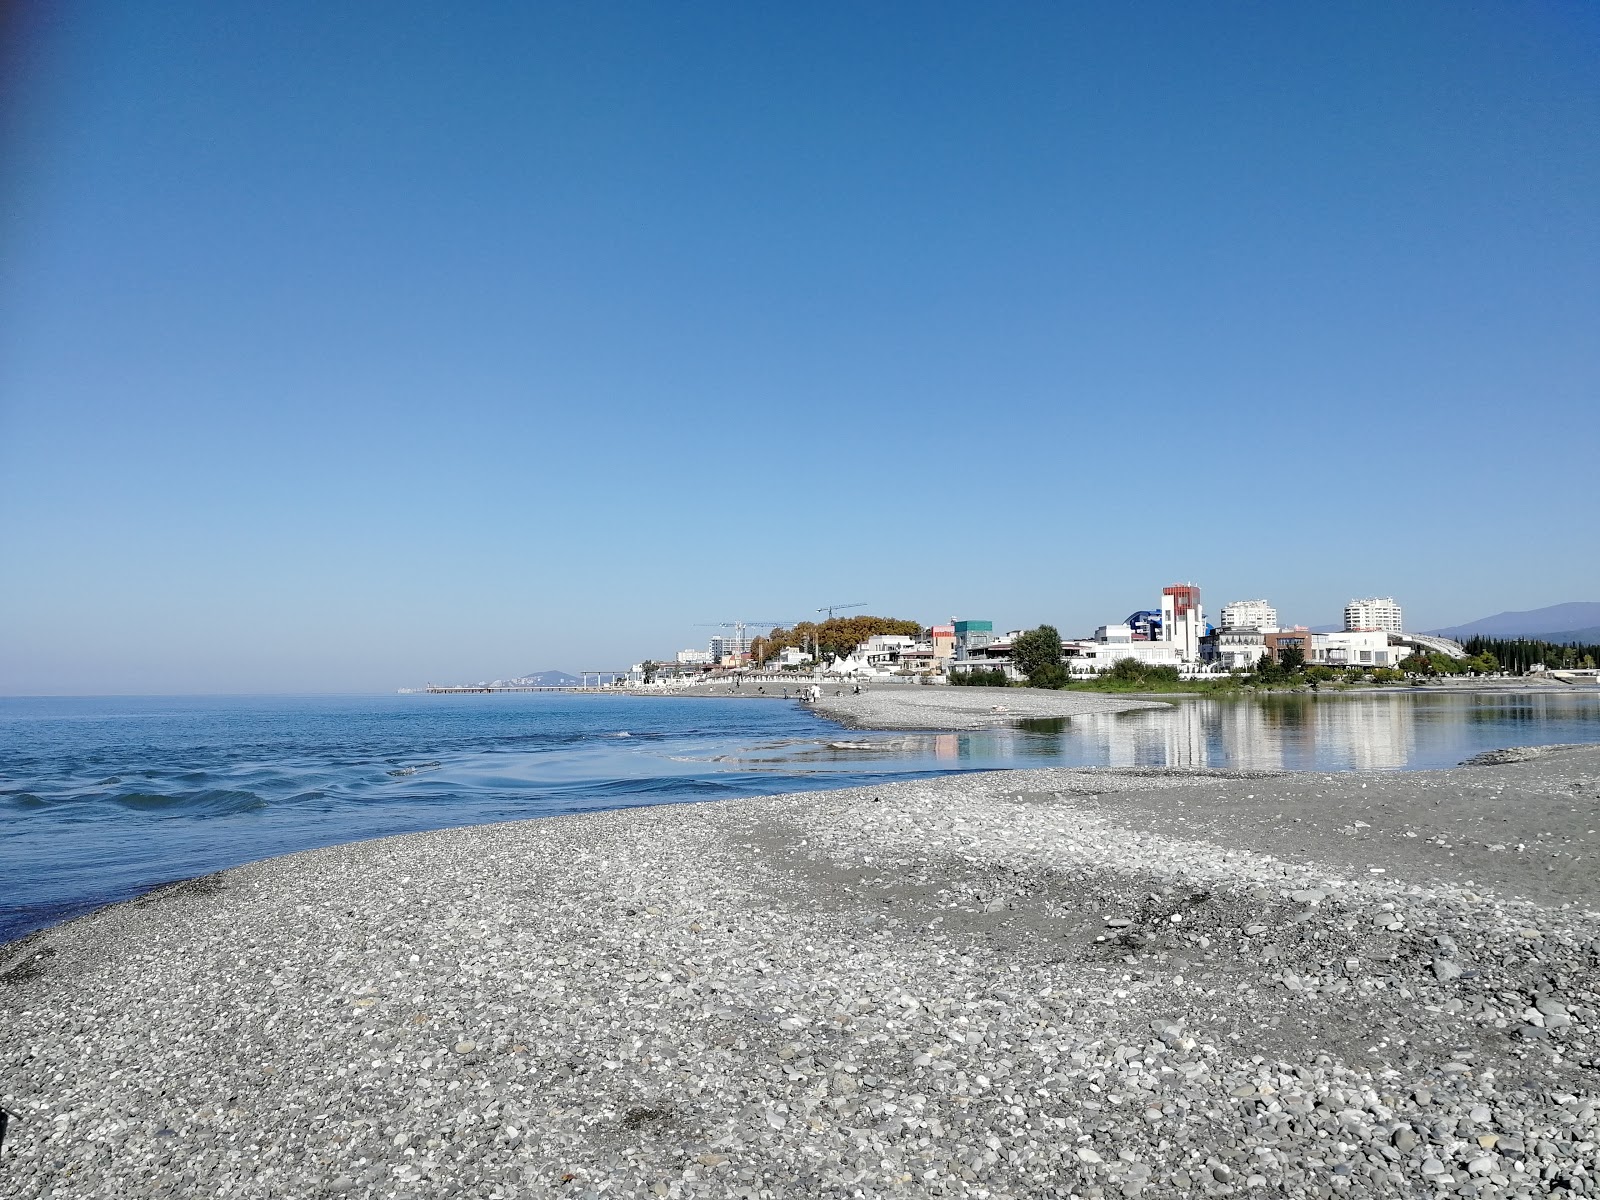 Foto von Adler port beach mit grauer kies Oberfläche